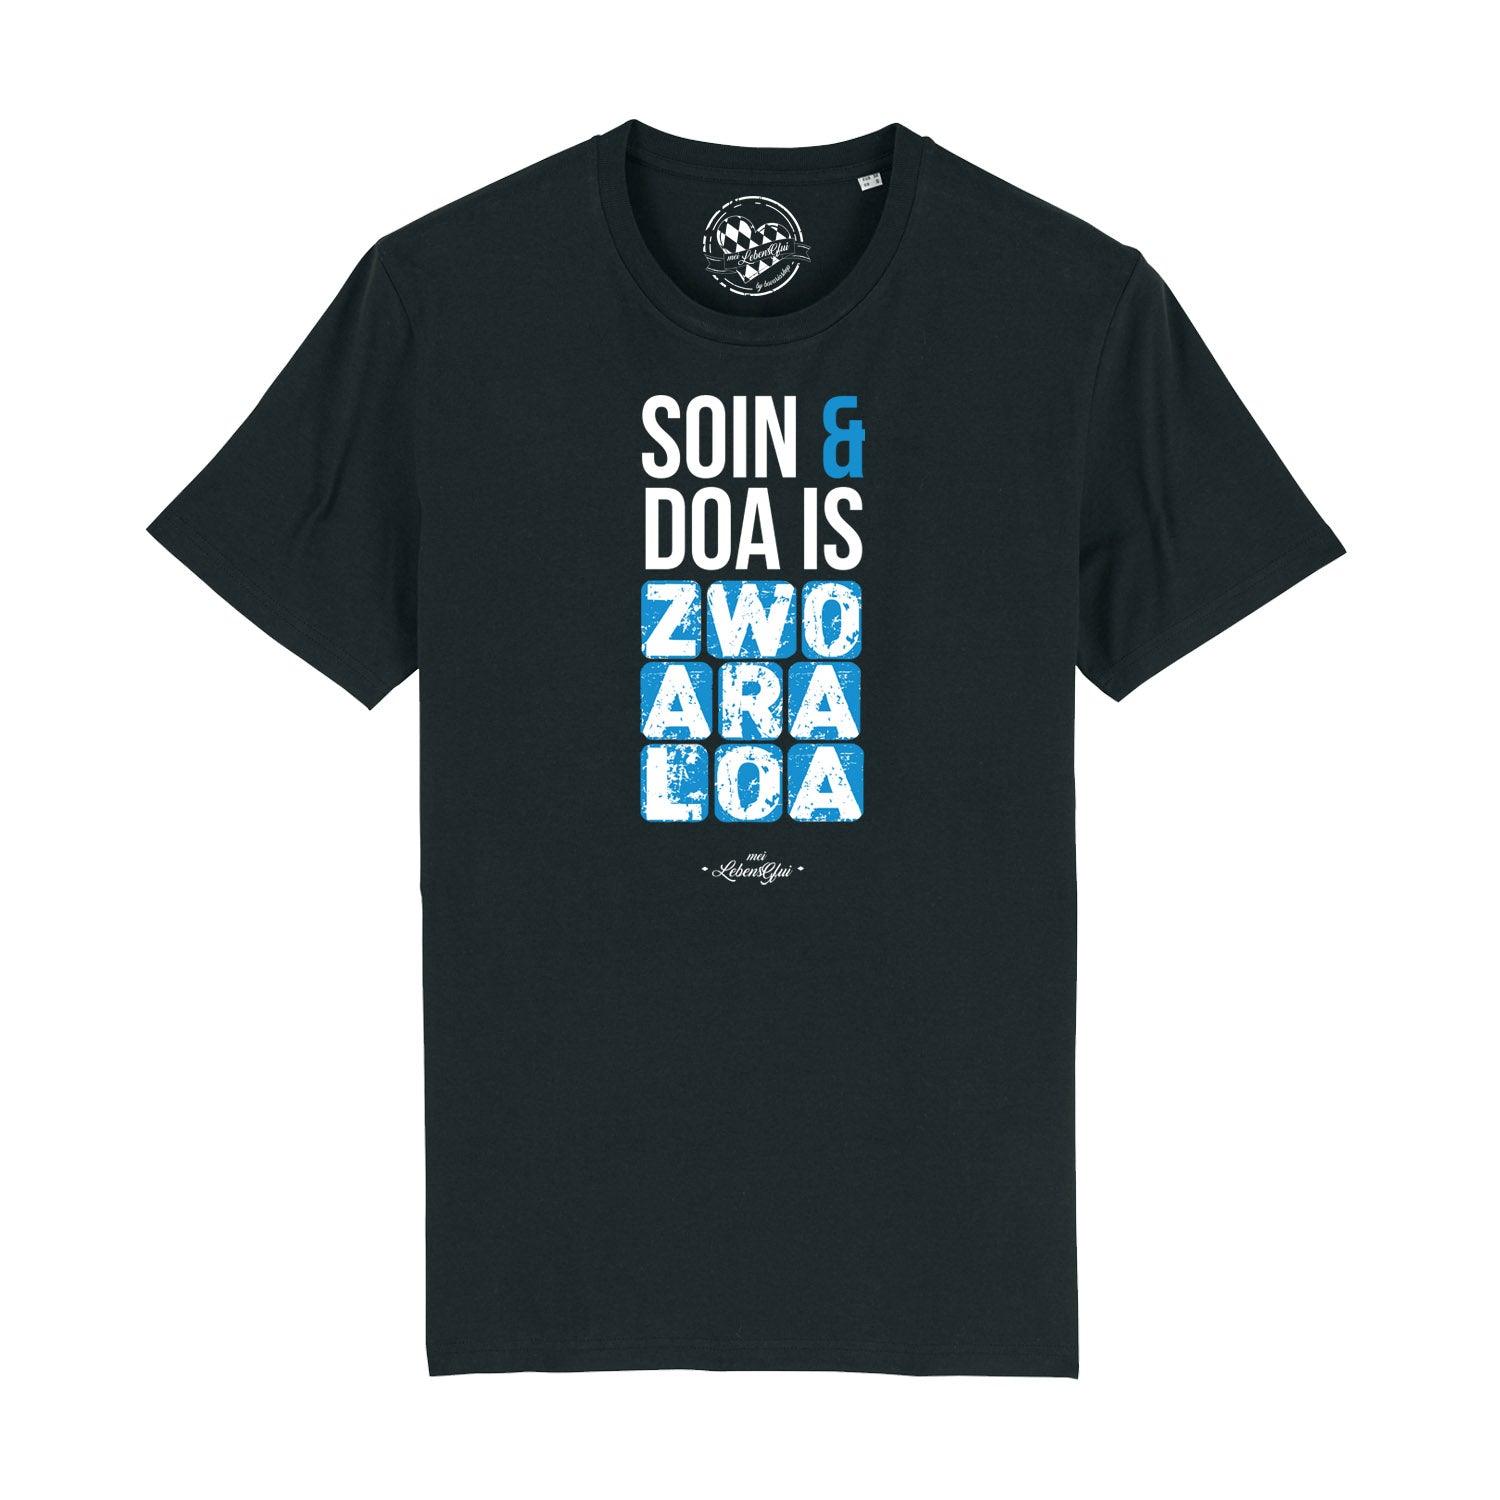 Herren T-Shirt "Soin und doa" - bavariashop - mei LebensGfui